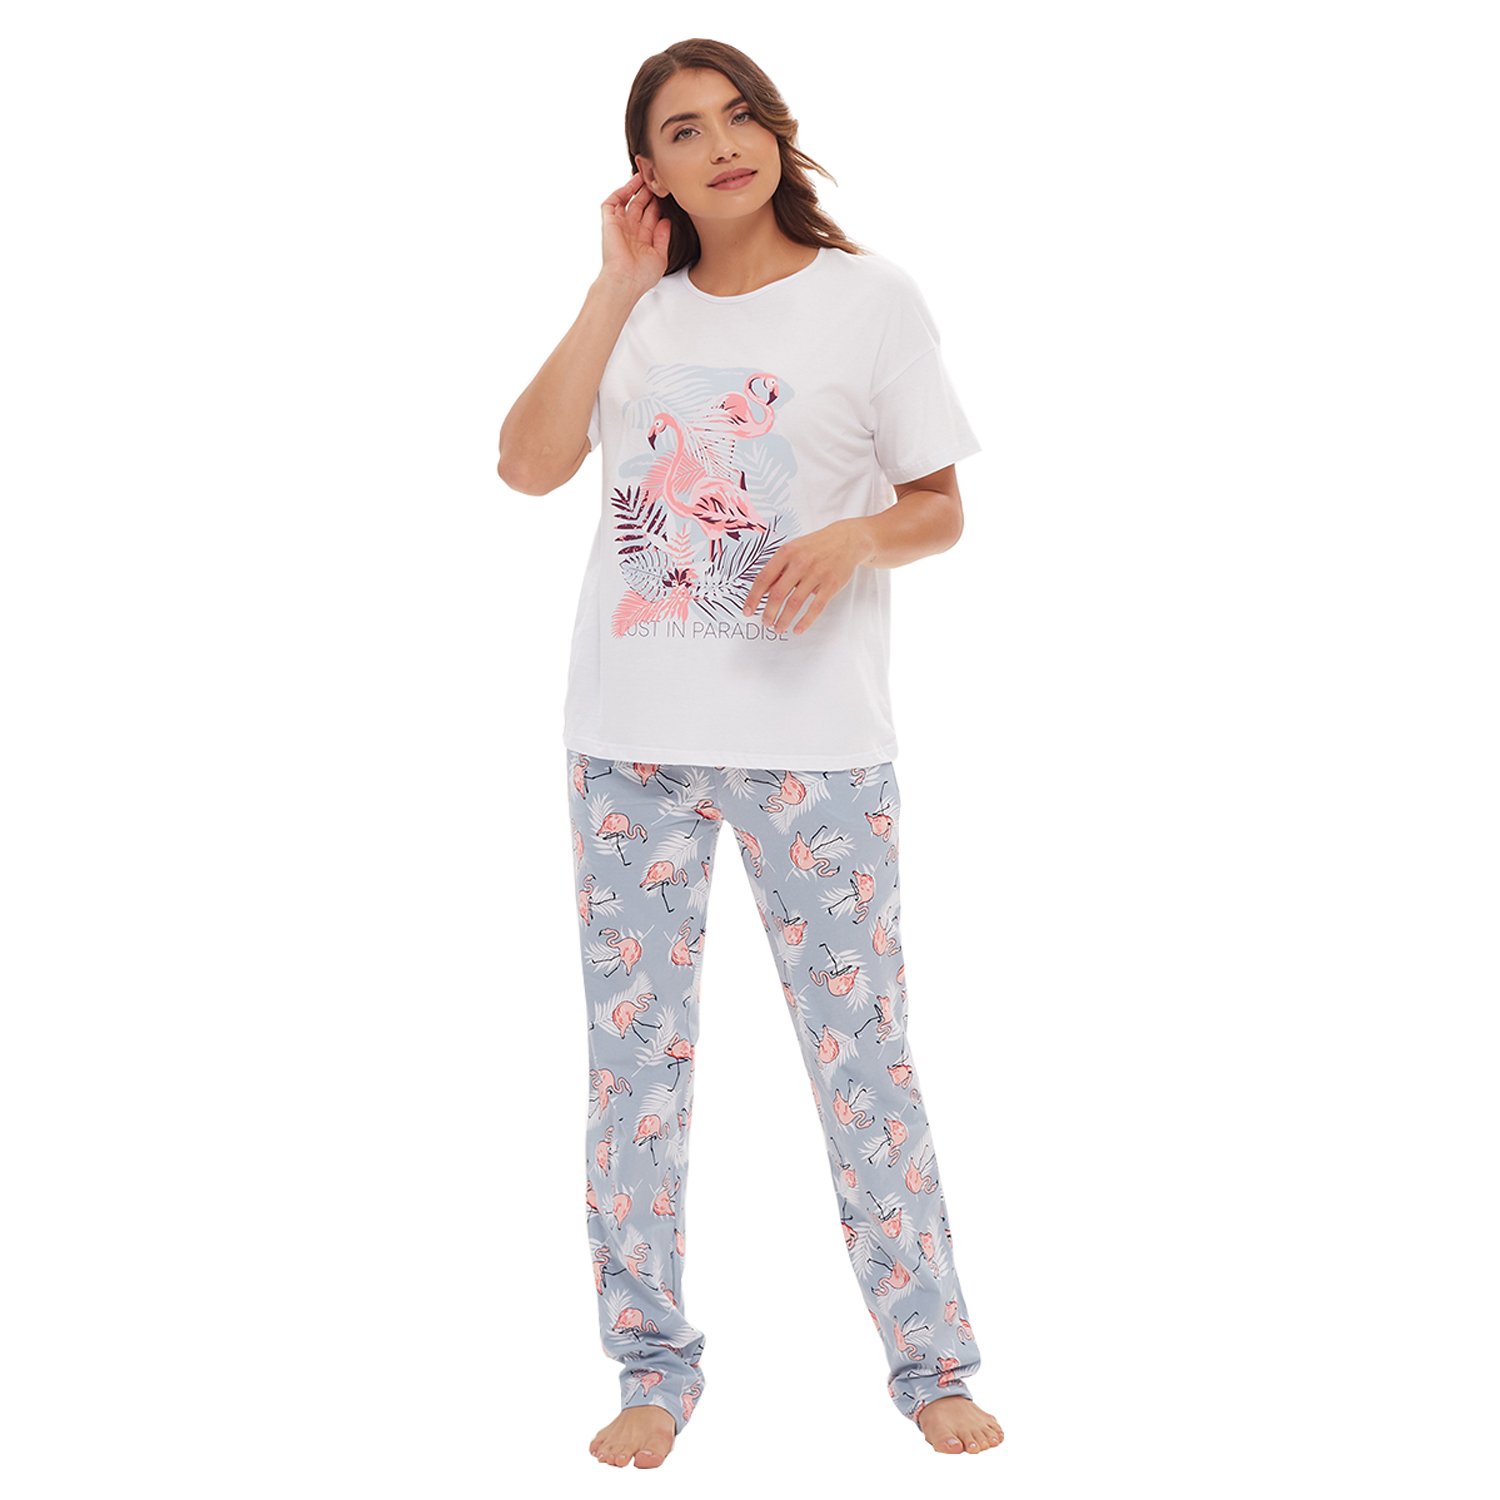 Пижама Купить В Интернет Магазине